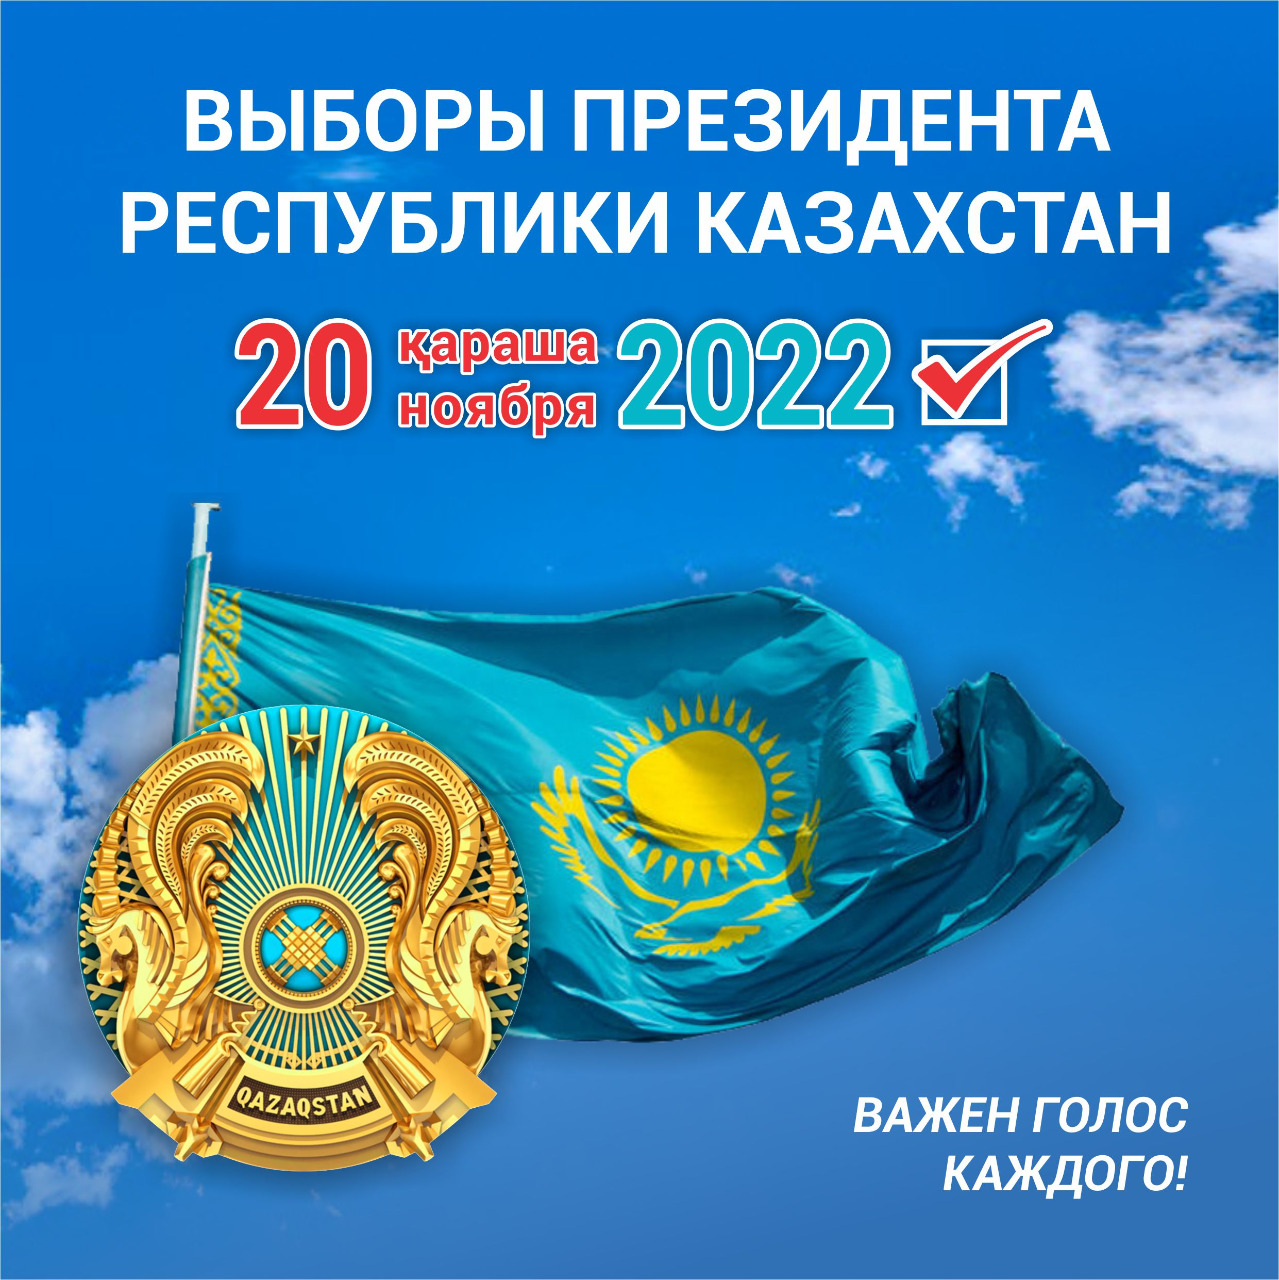 20 НОЯБРЯ 2022 ГОДА ВЫБОРЫ ПРЕЗИДЕНТА РЕСПУБЛИКИ КАЗАХСТАН ВАЖЕН ГОЛОС КАЖДОГО